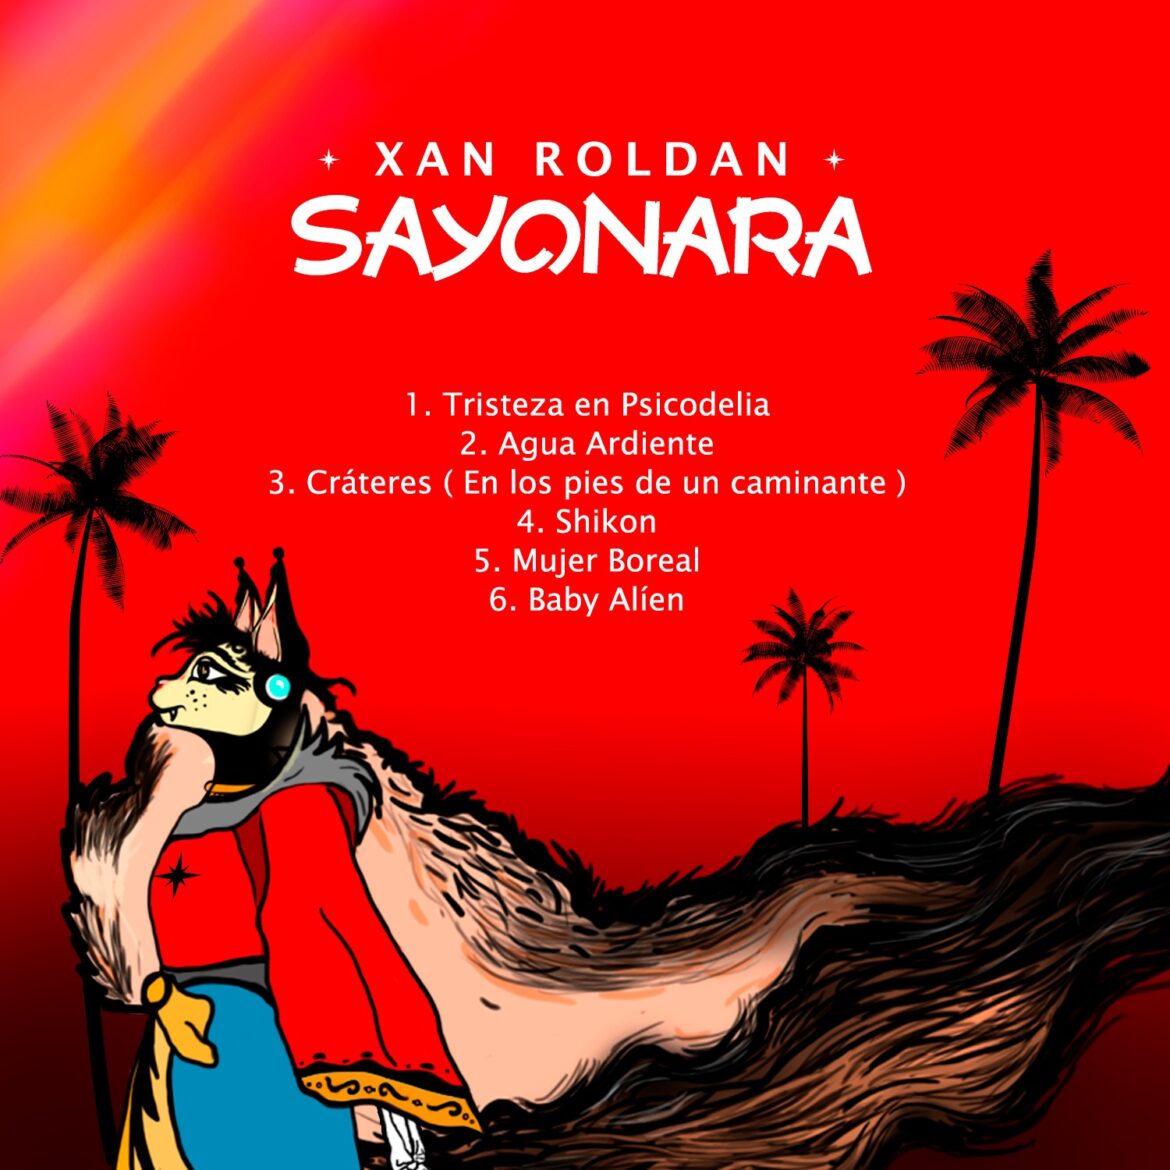 Xan Roldan estrena ‘Sayonara’ un EP para abrir y cerrar ciclos